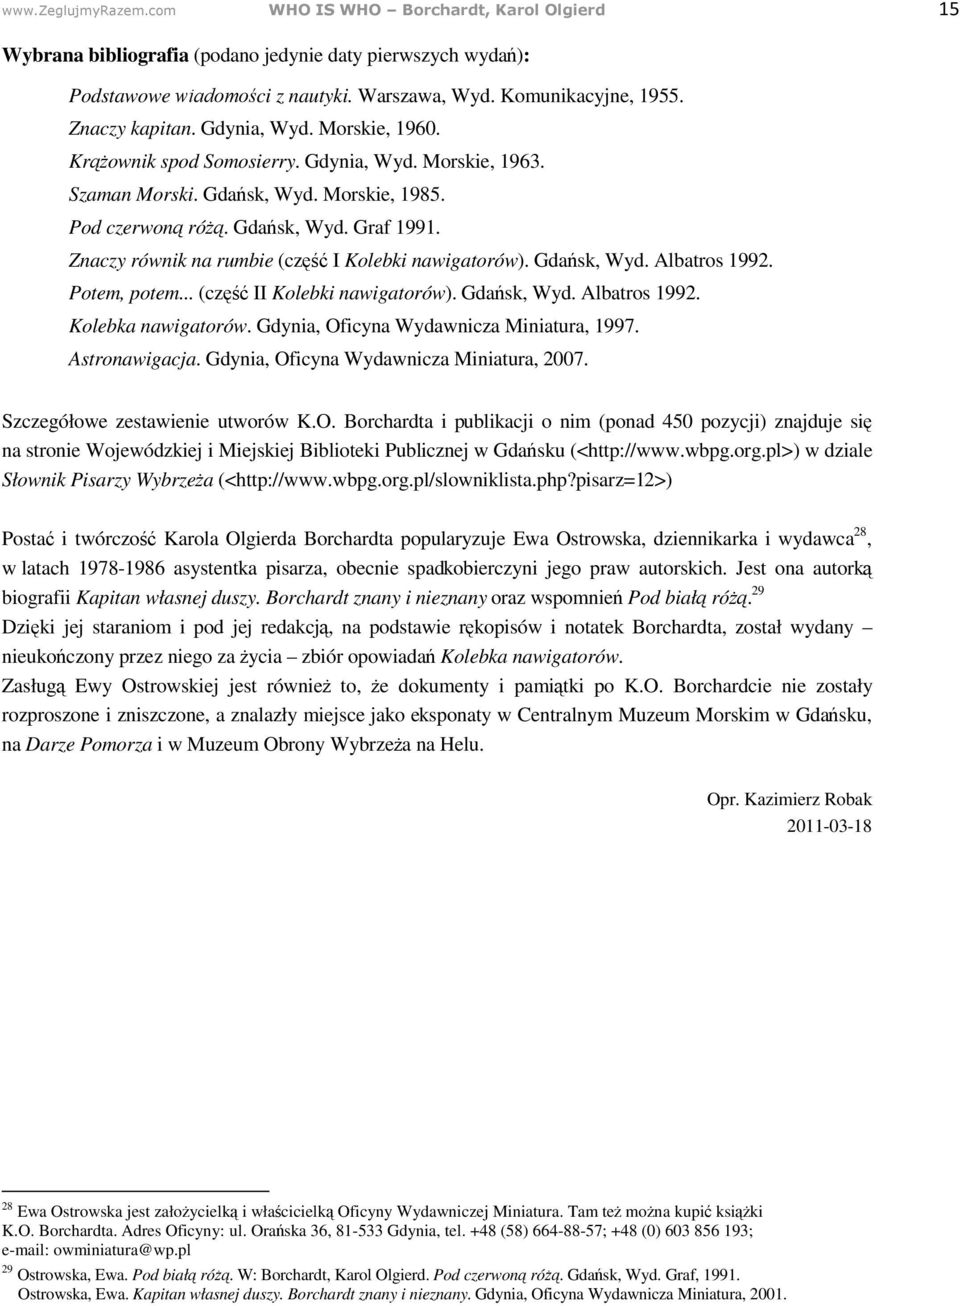 Potem, potem... (cz II Kolebki nawigatorów). Gda sk, Wyd. Albatros 1992. Kolebka nawigatorów. Gdynia, Oficyna Wydawnicza Miniatura, 1997. Astronawigacja. Gdynia, Oficyna Wydawnicza Miniatura, 2007.